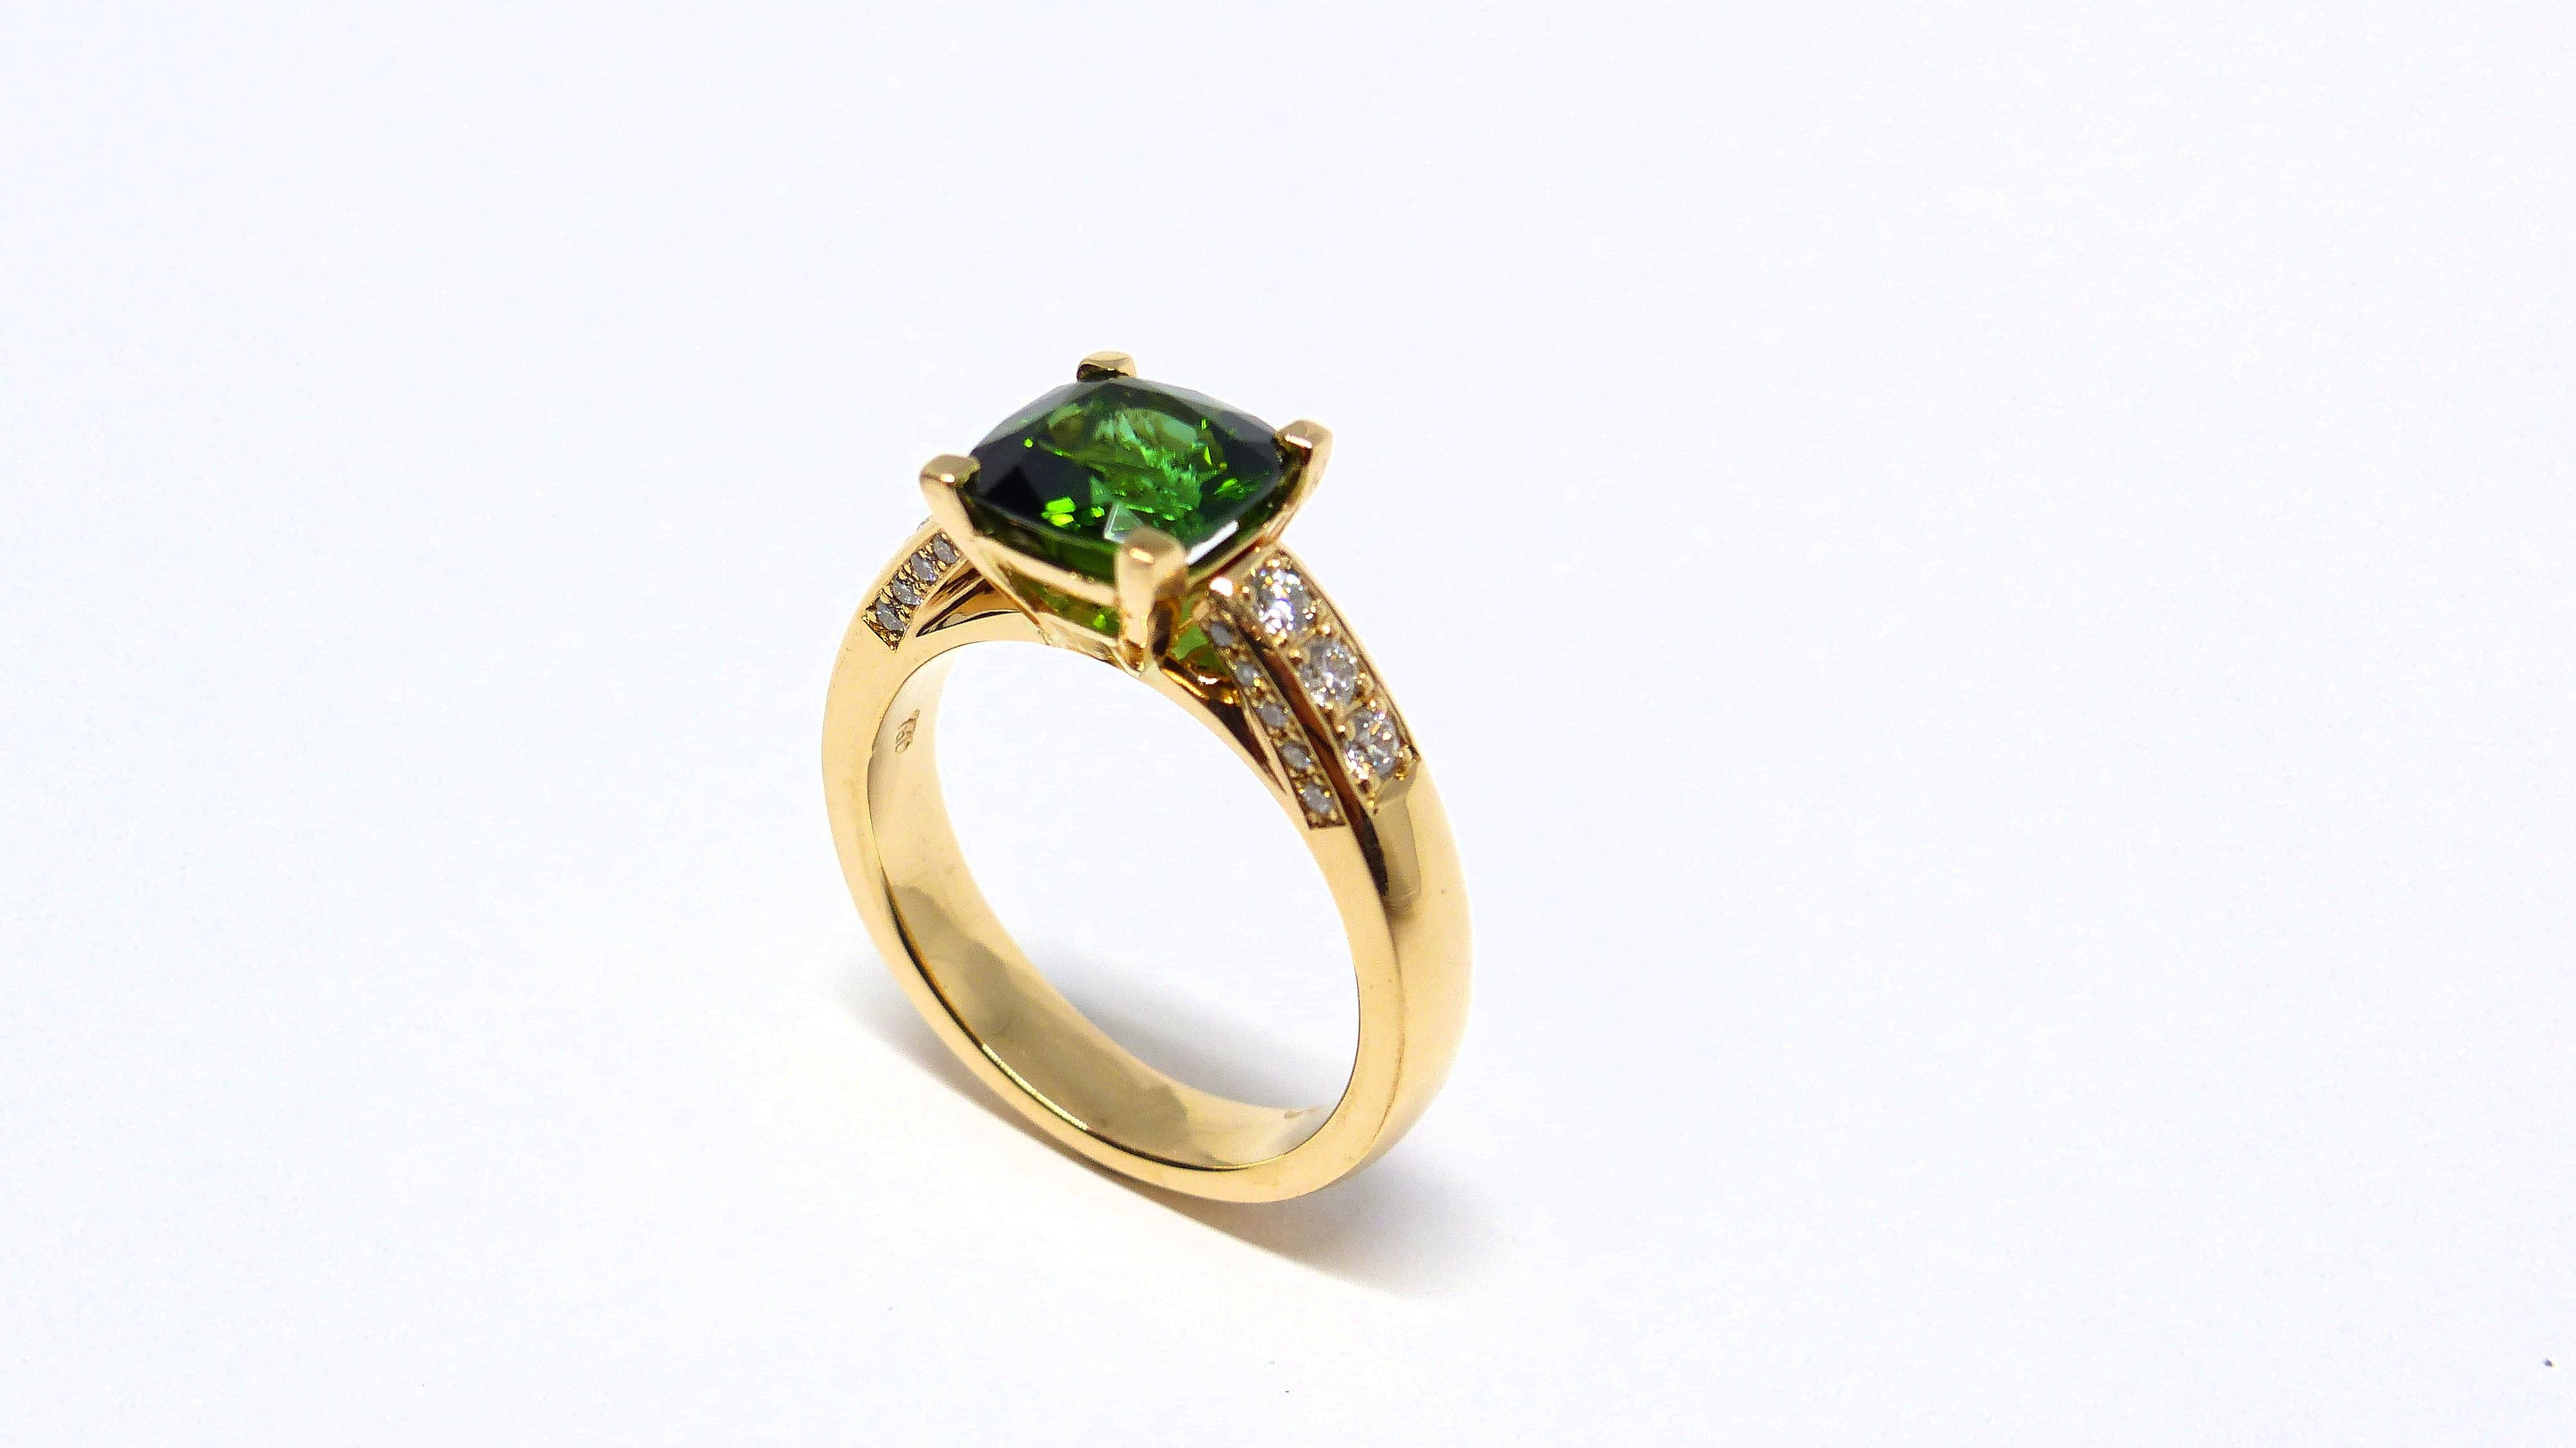 Thomas Leyser est réputé pour ses créations de bijoux contemporains utilisant des pierres précieuses fines. 

Cette bague en or rose 18k (6,60g) est sertie d'une tourmaline verte intense (facettée, coussin, 7,5mm, 1,85ct) et de 26 diamants (taille